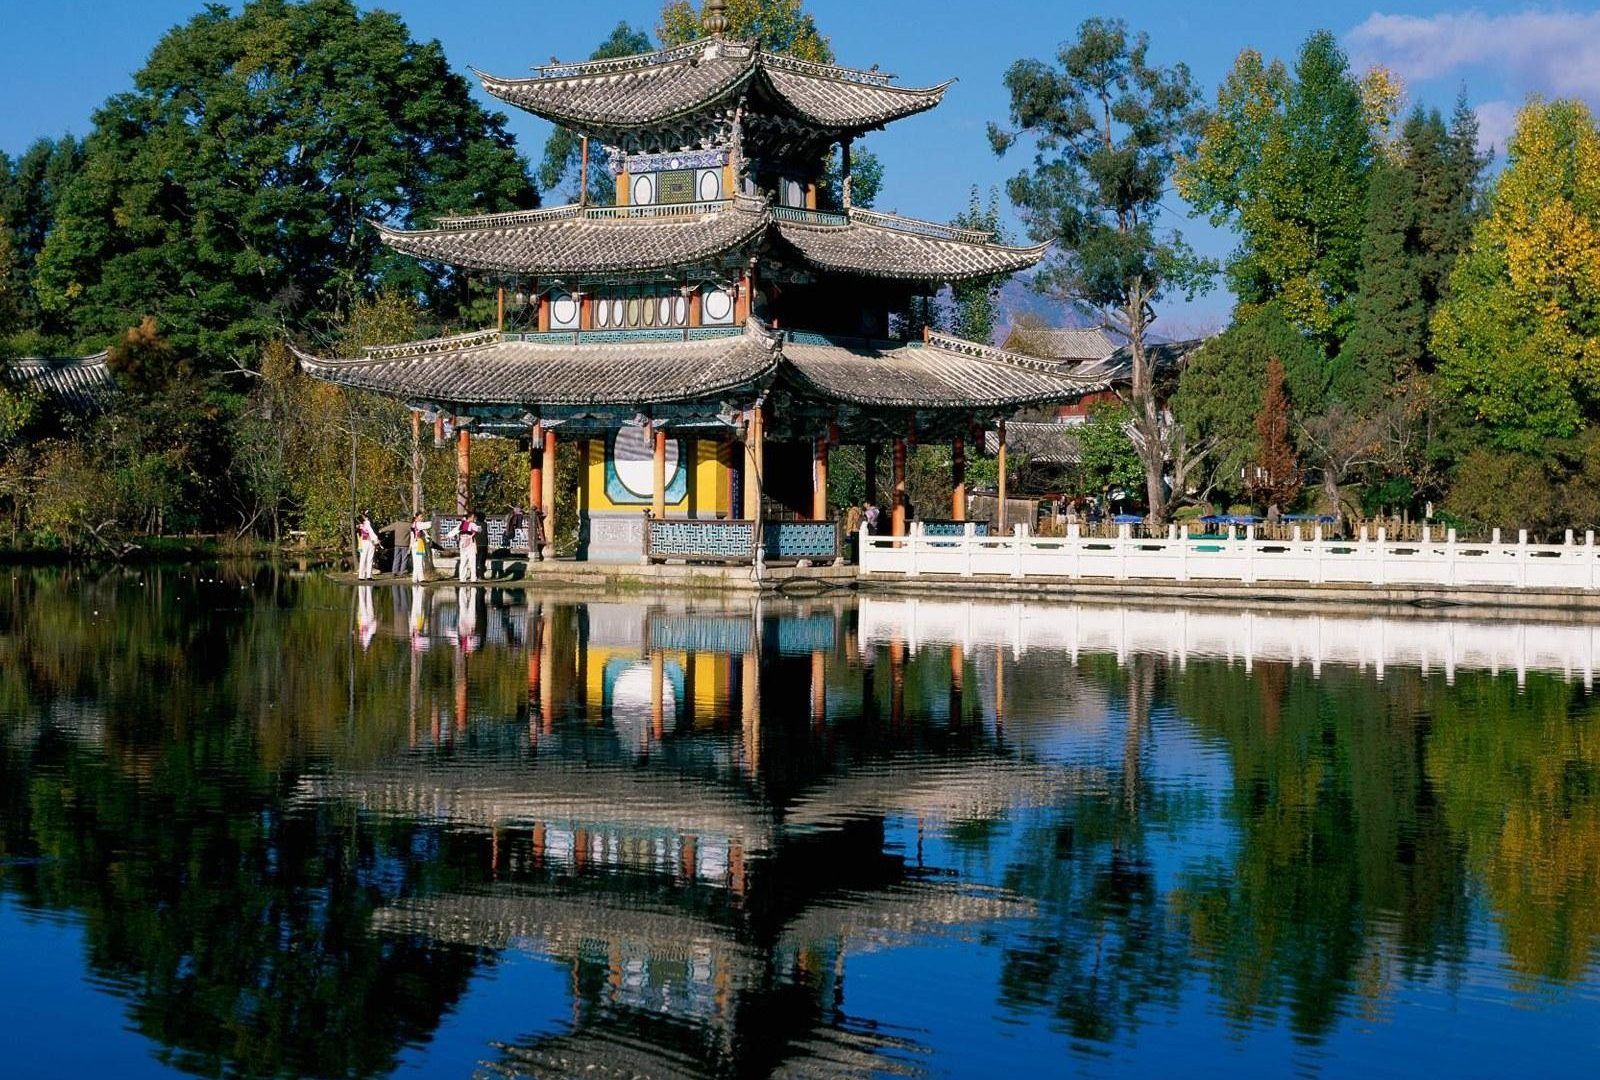 عکس معماری چینی یک عنصر مهم در فهم و شناخت این فرهنگ